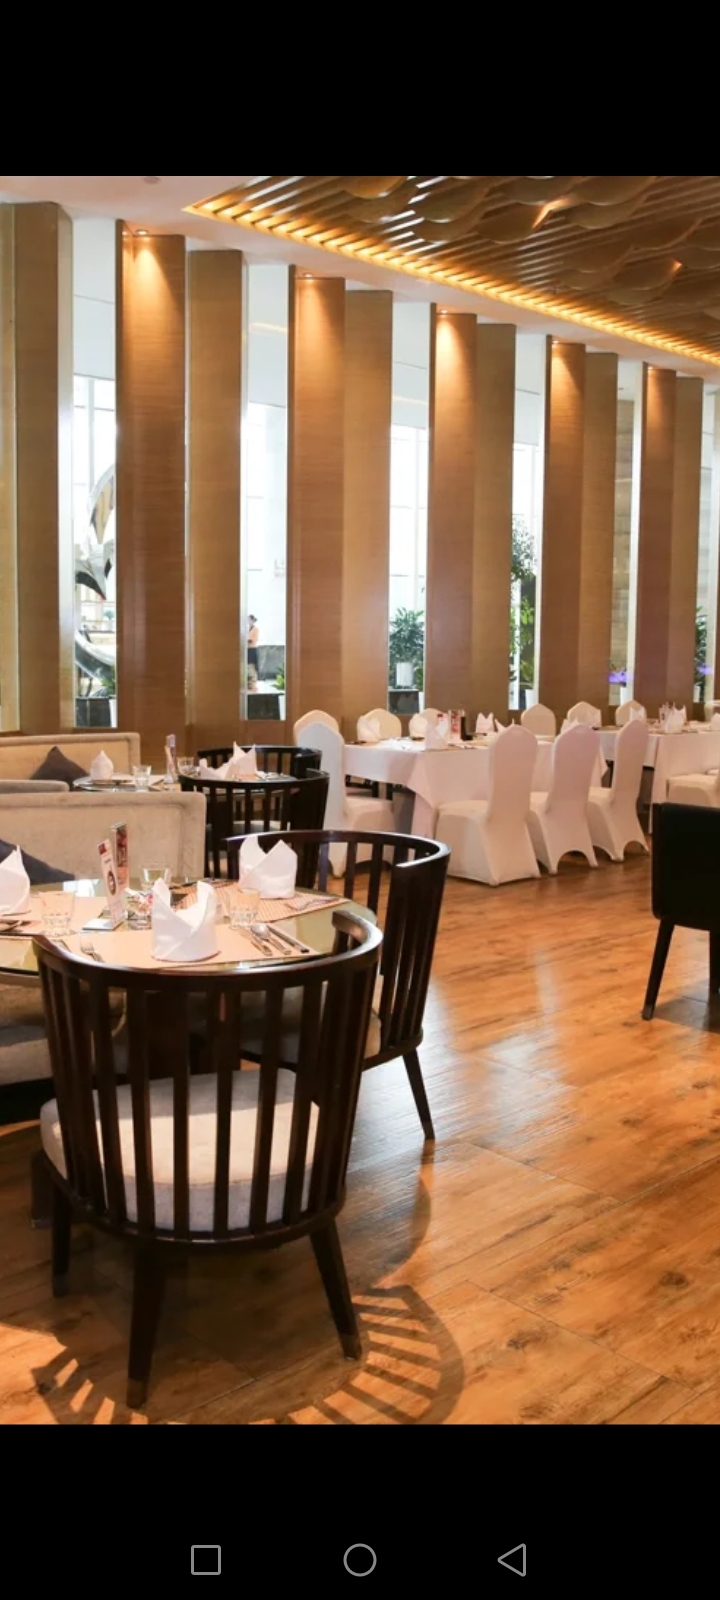 在美丽的长沙，有一所备受好评的酒店——长沙三景韦尔斯利酒店。 作为一家大型酒店，长沙三景韦尔斯利酒店